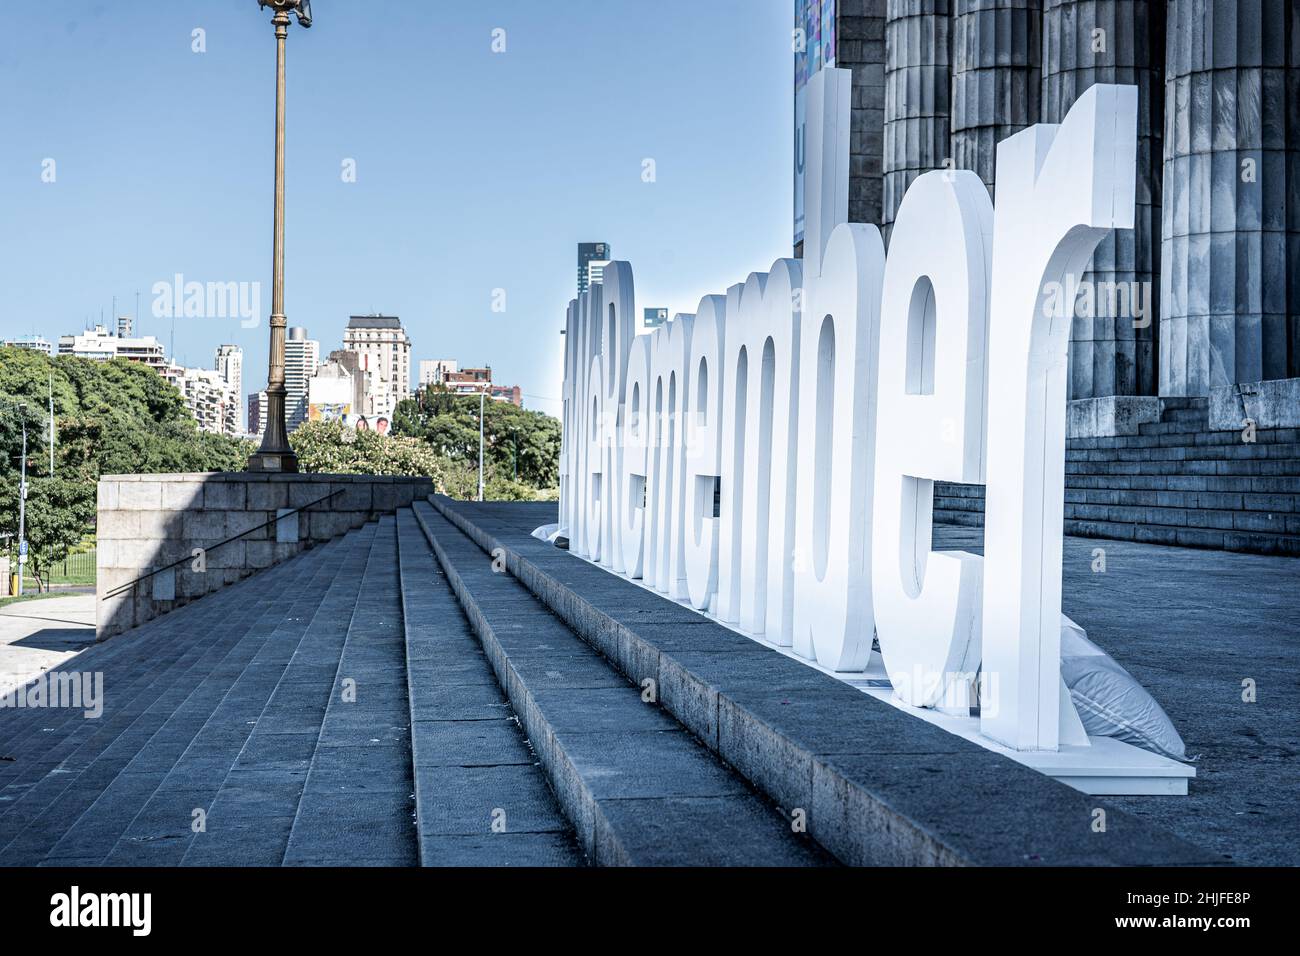 Journée internationale de commémoration de l'Holocauste.Hashtag NOUS NOUS SOUVENONS devant la Faculté de droit de Buenos Aires Argentine.Copier l'espace. Banque D'Images